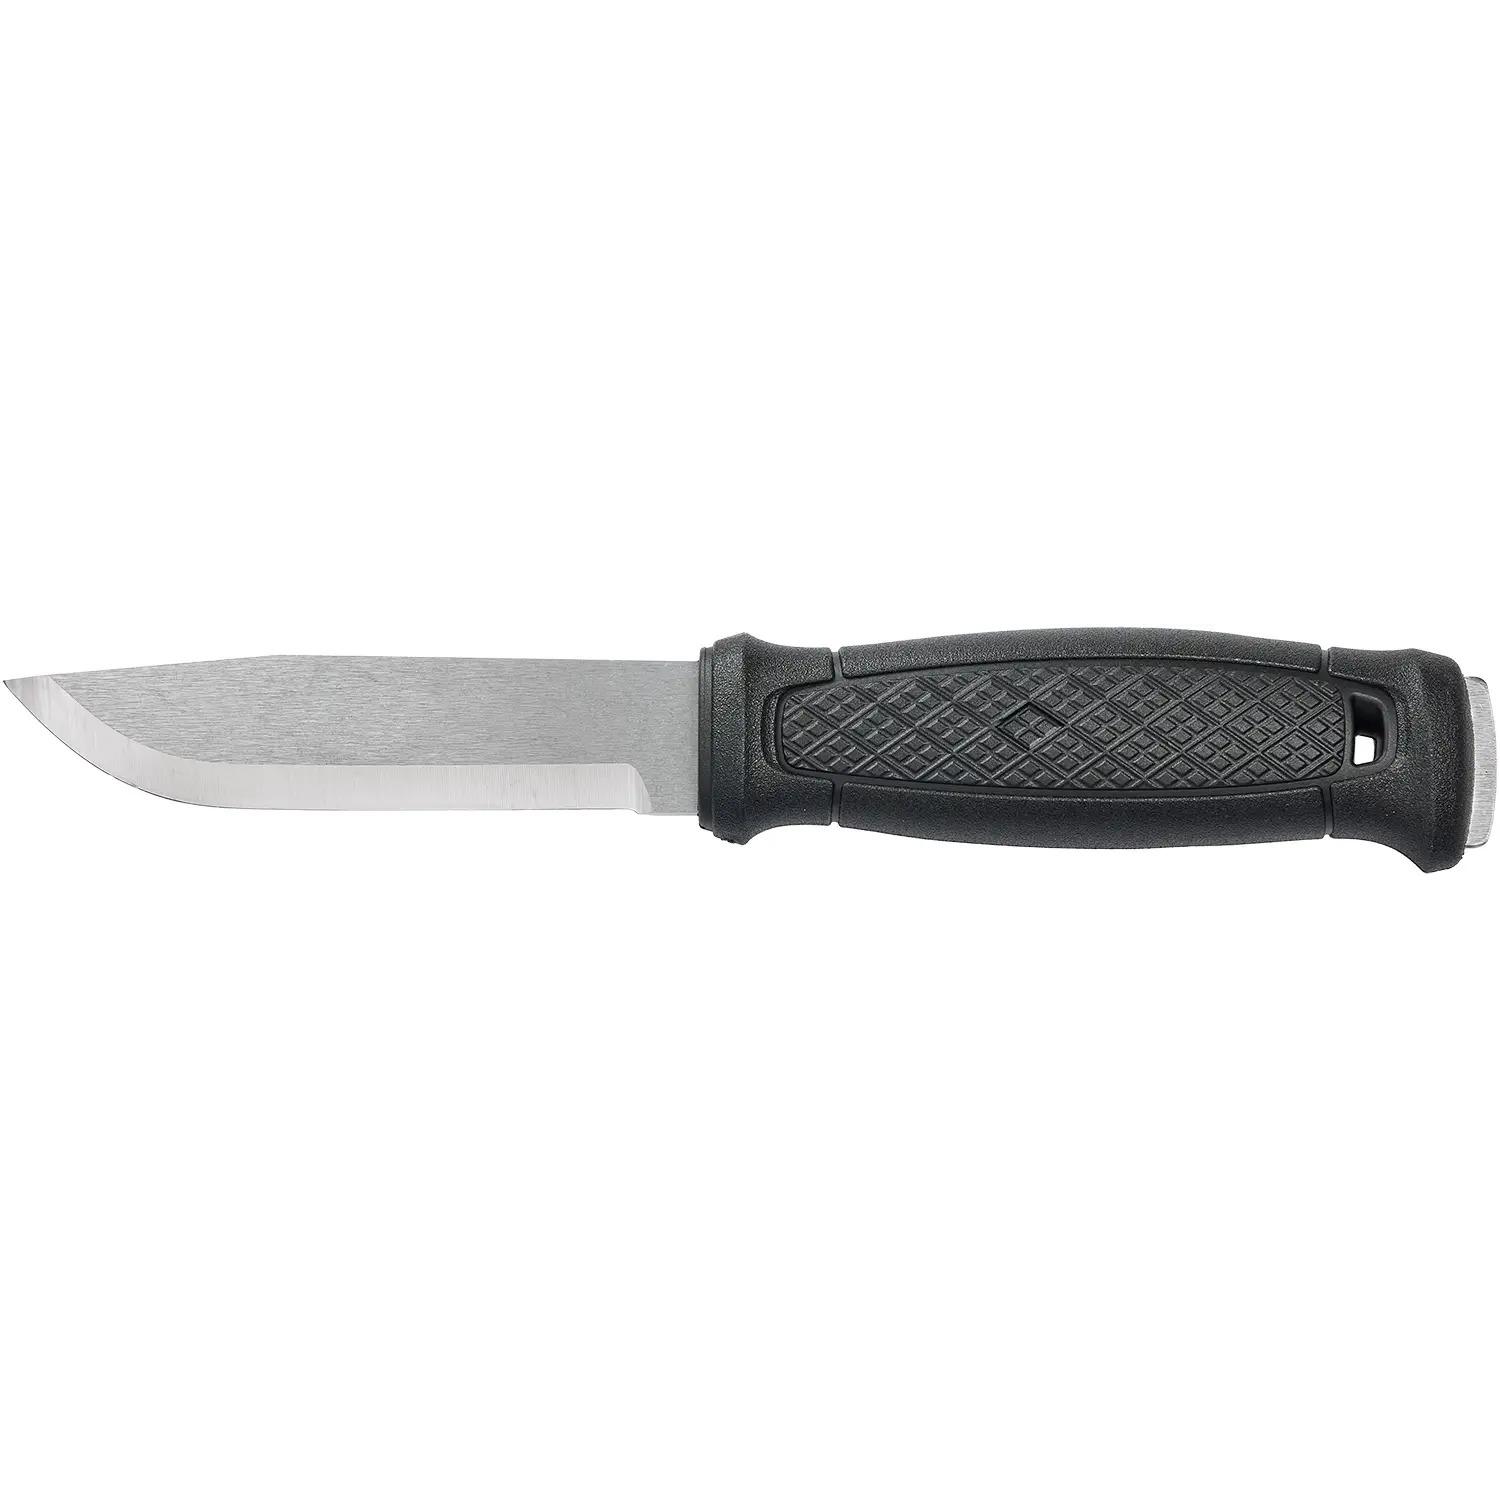 Нож Morakniv Garberg S Survival Kit 13914 2305.02.32